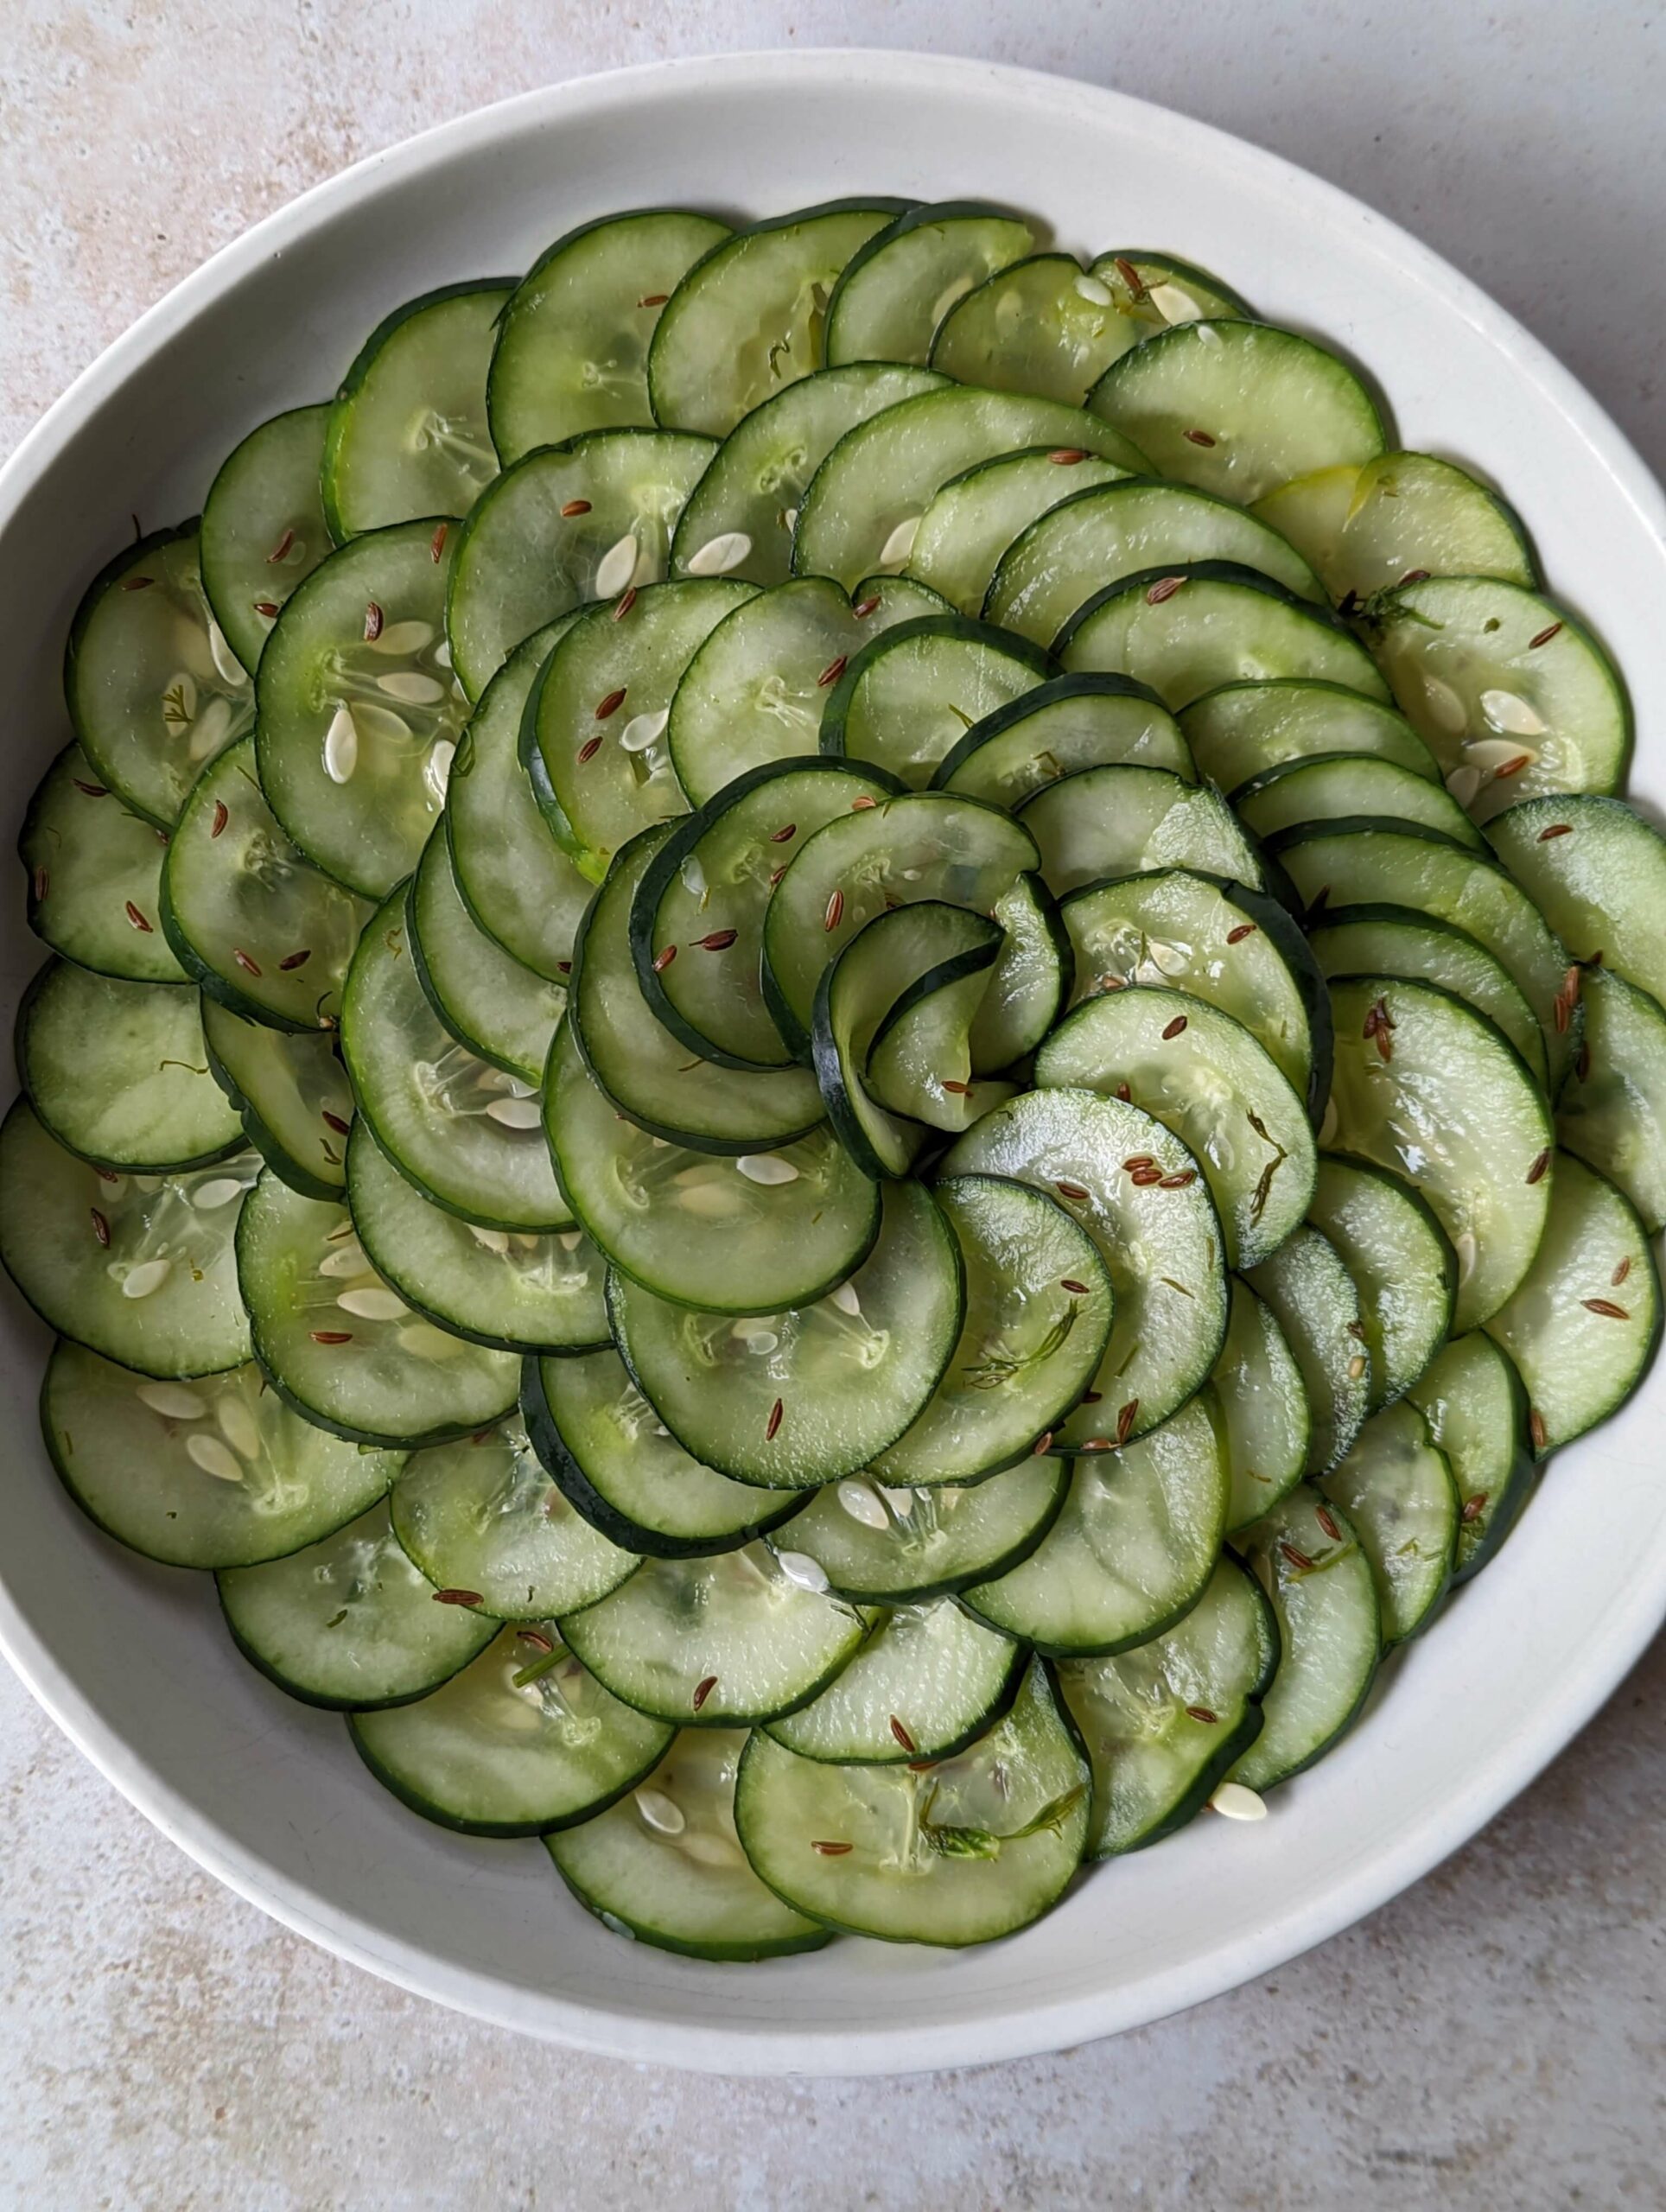 Pressgurka arranged in a swirl on a plate.